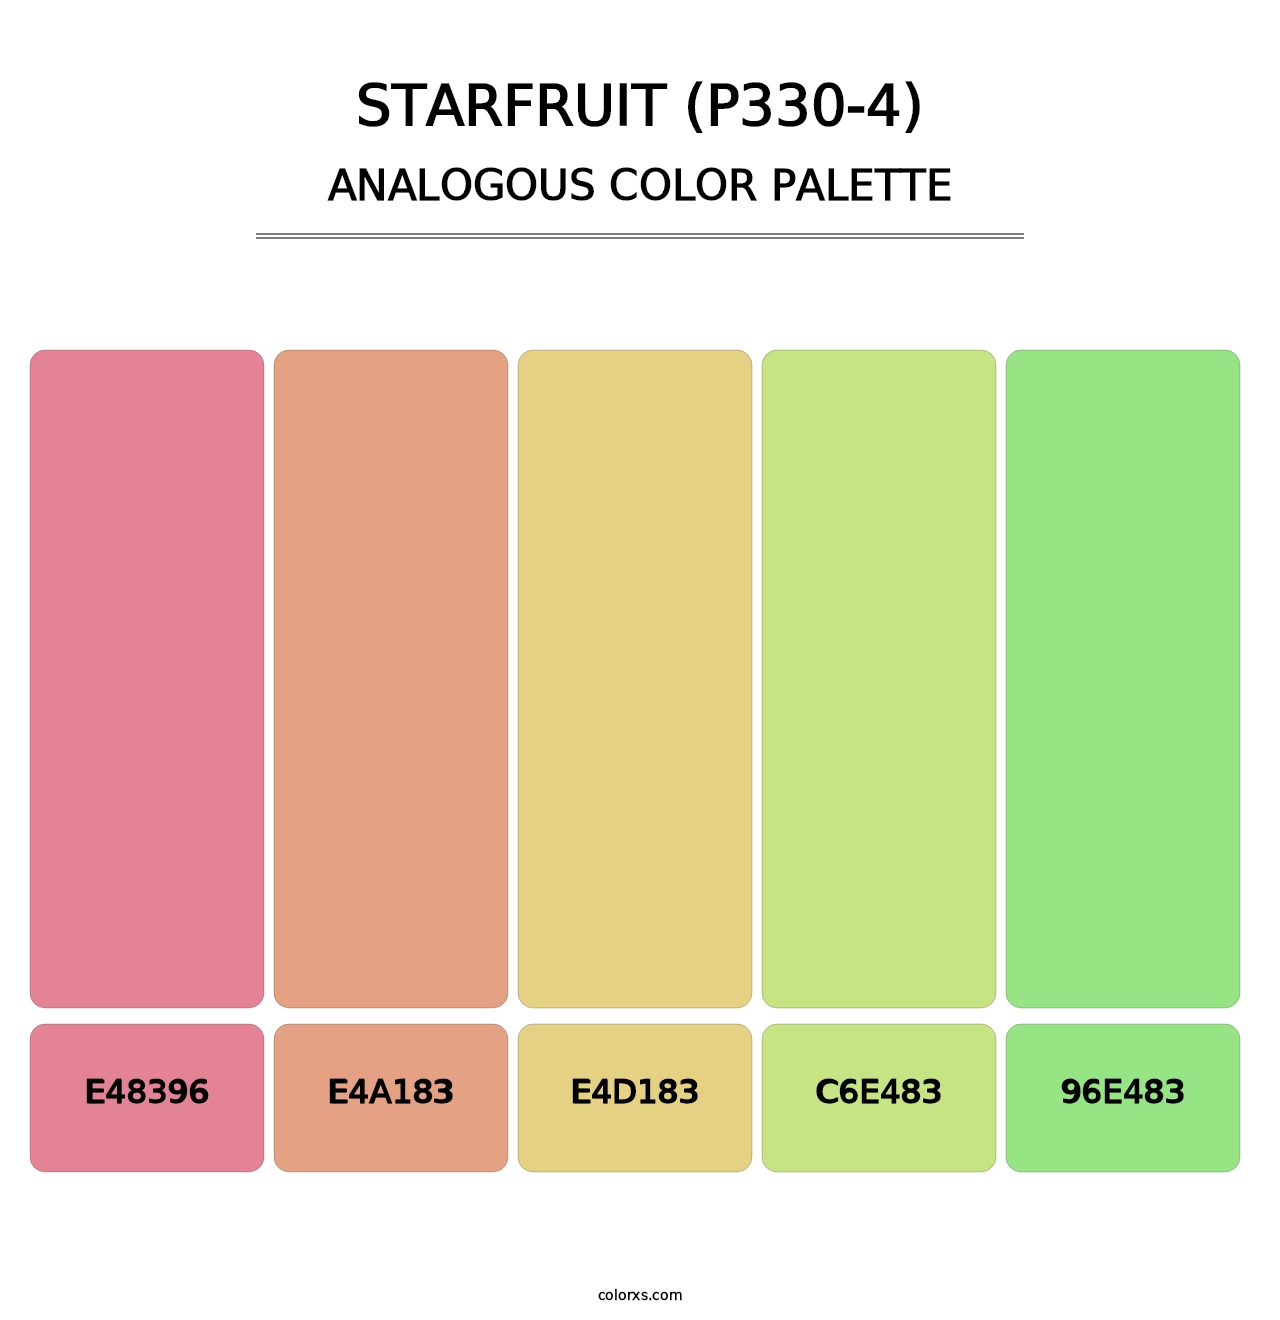 Starfruit (P330-4) - Analogous Color Palette